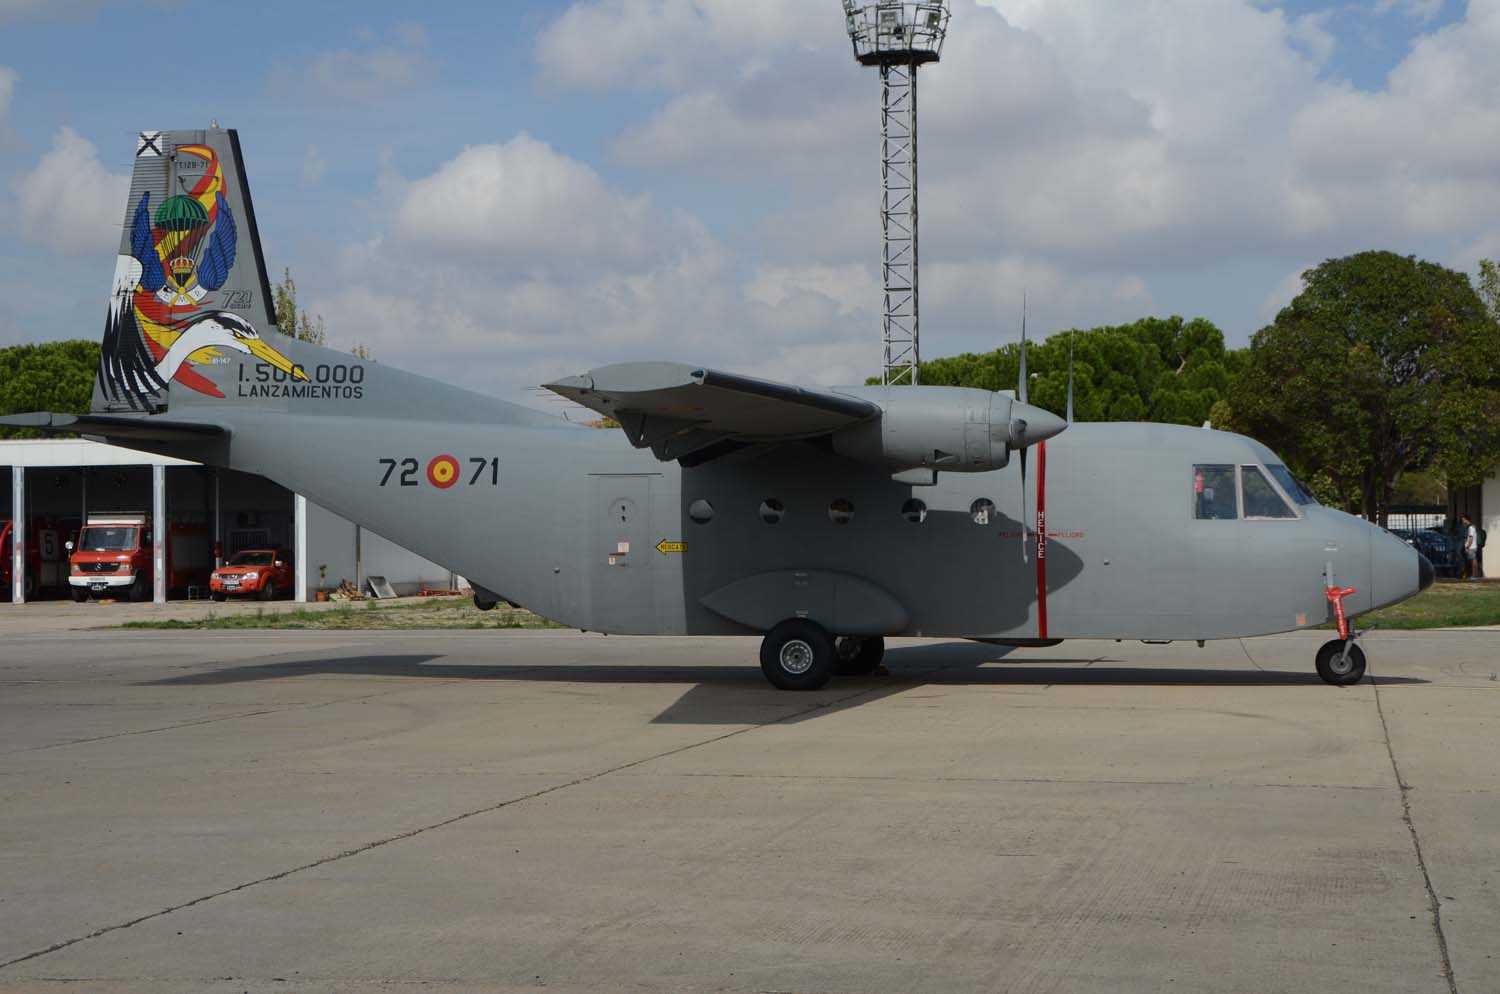 Dos CASA C.212 han participado este año. Uno para transportar a oos dos miembros de PAPEA que han saltado con la bandera española, y otro en el desfile aéreo.